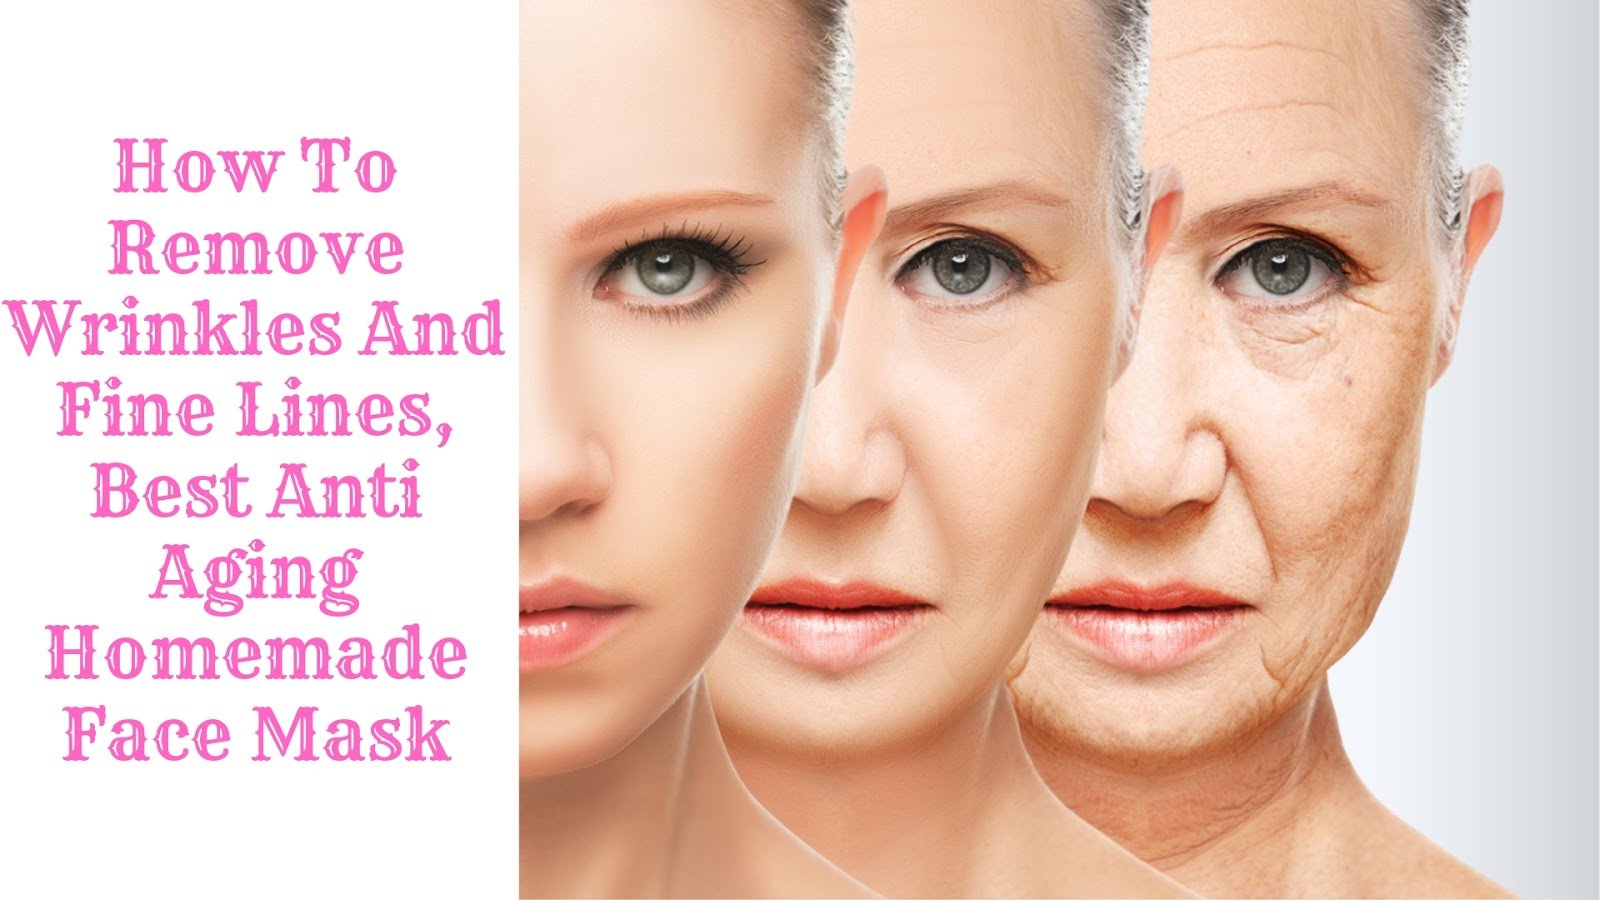 face mask for wrinkles homemade